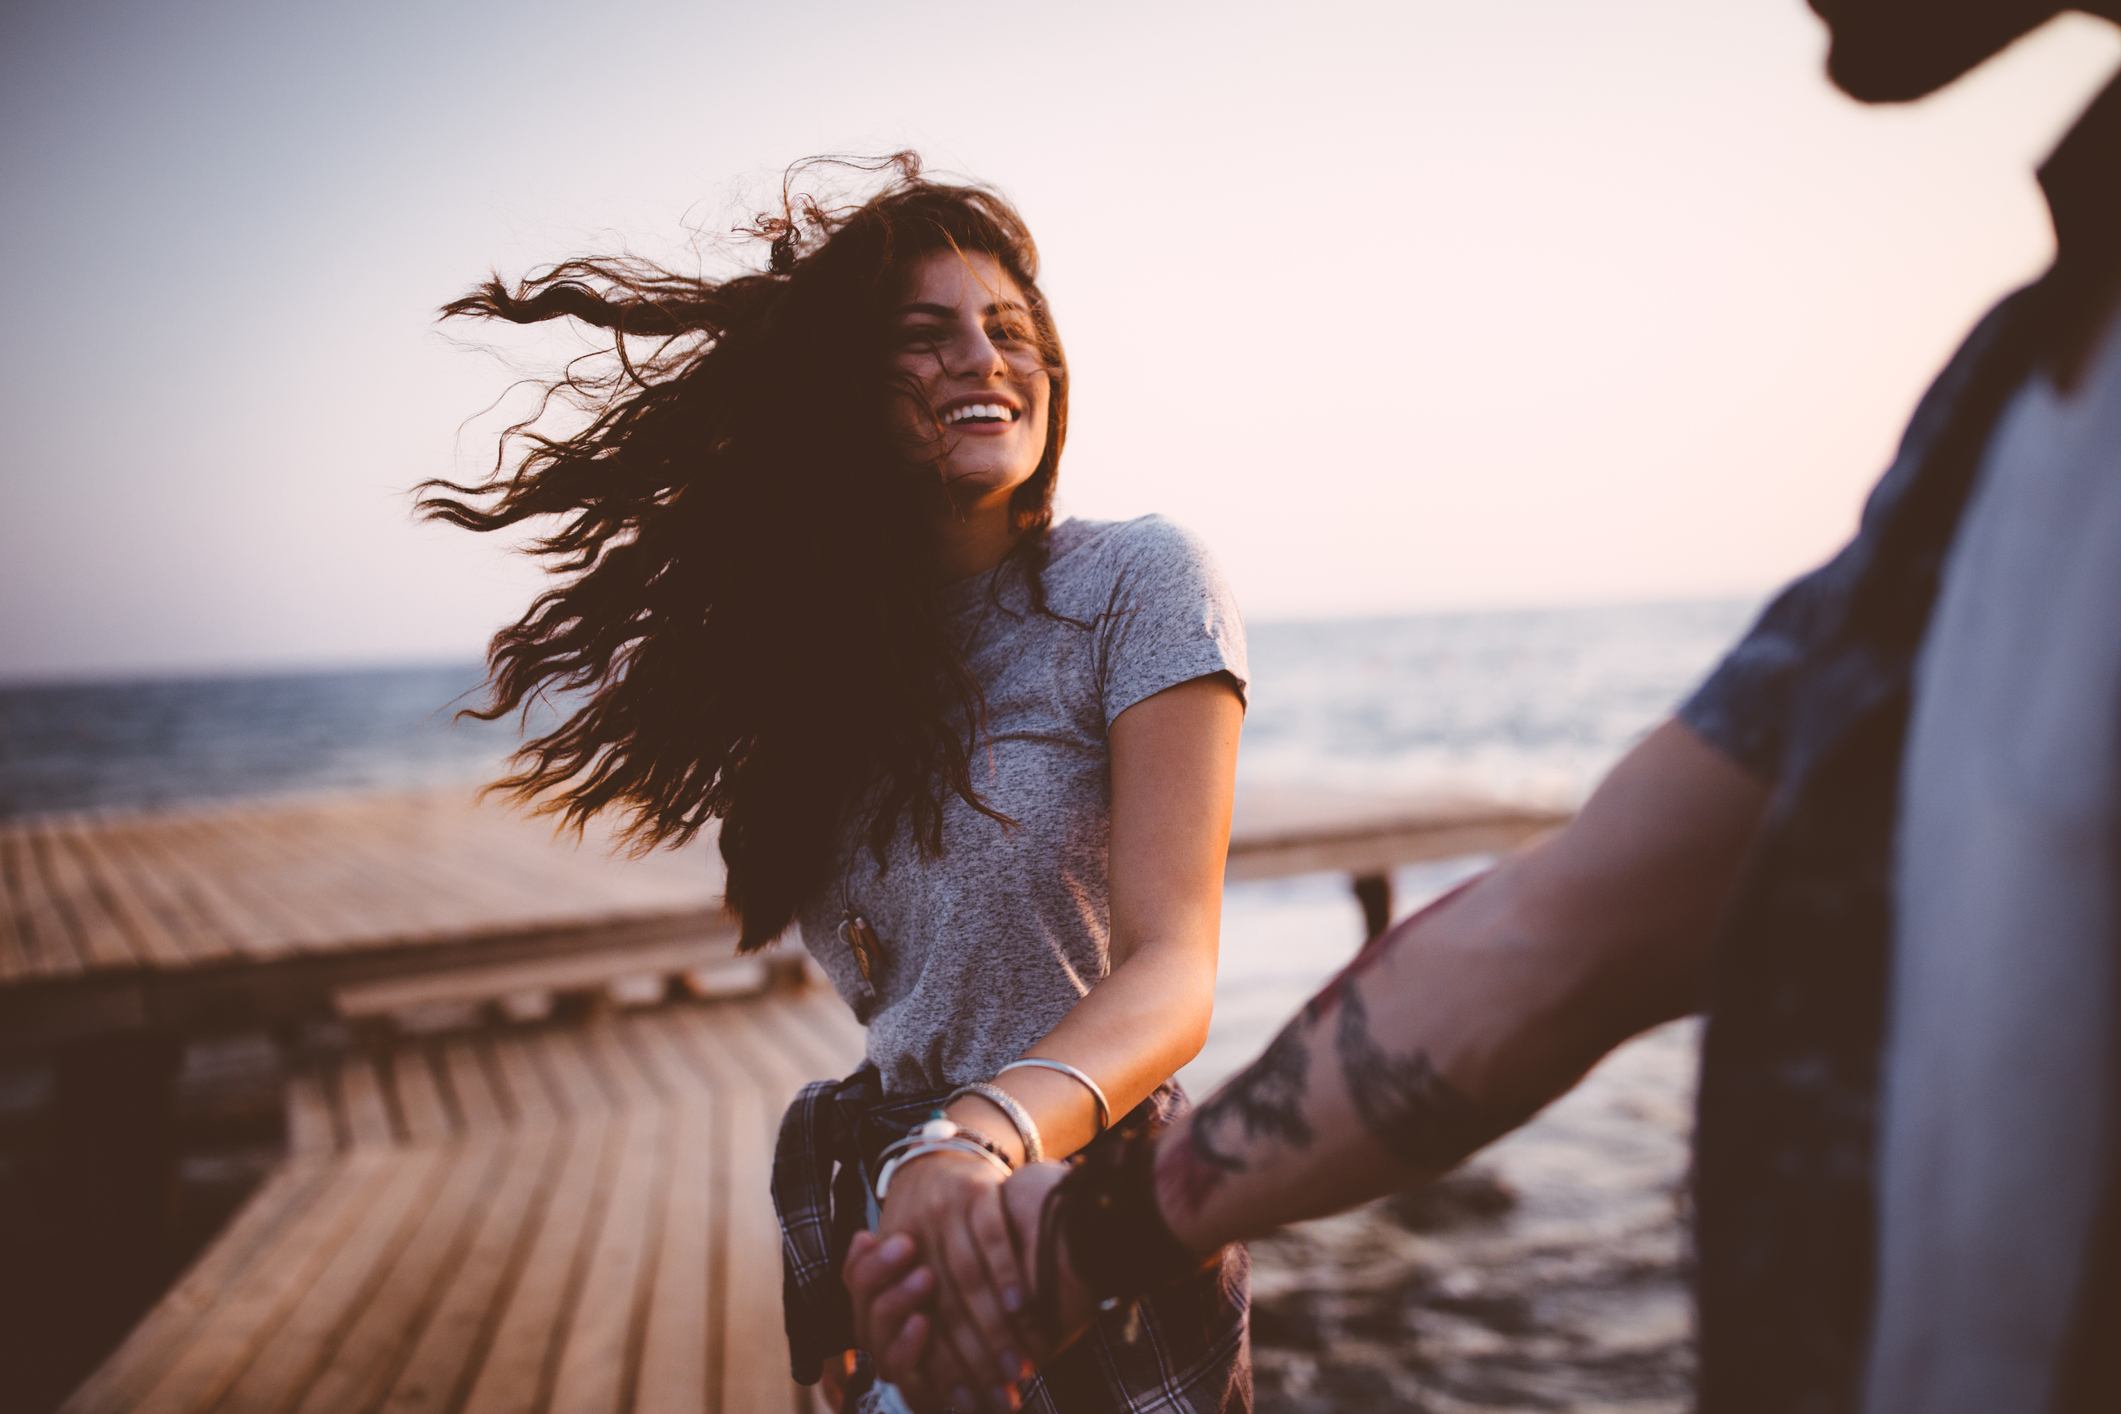 10 σημάδια που δείχνουν ότι έχετε μια πολύ ουσιαστική (οπότε και όμορφη) σχέση